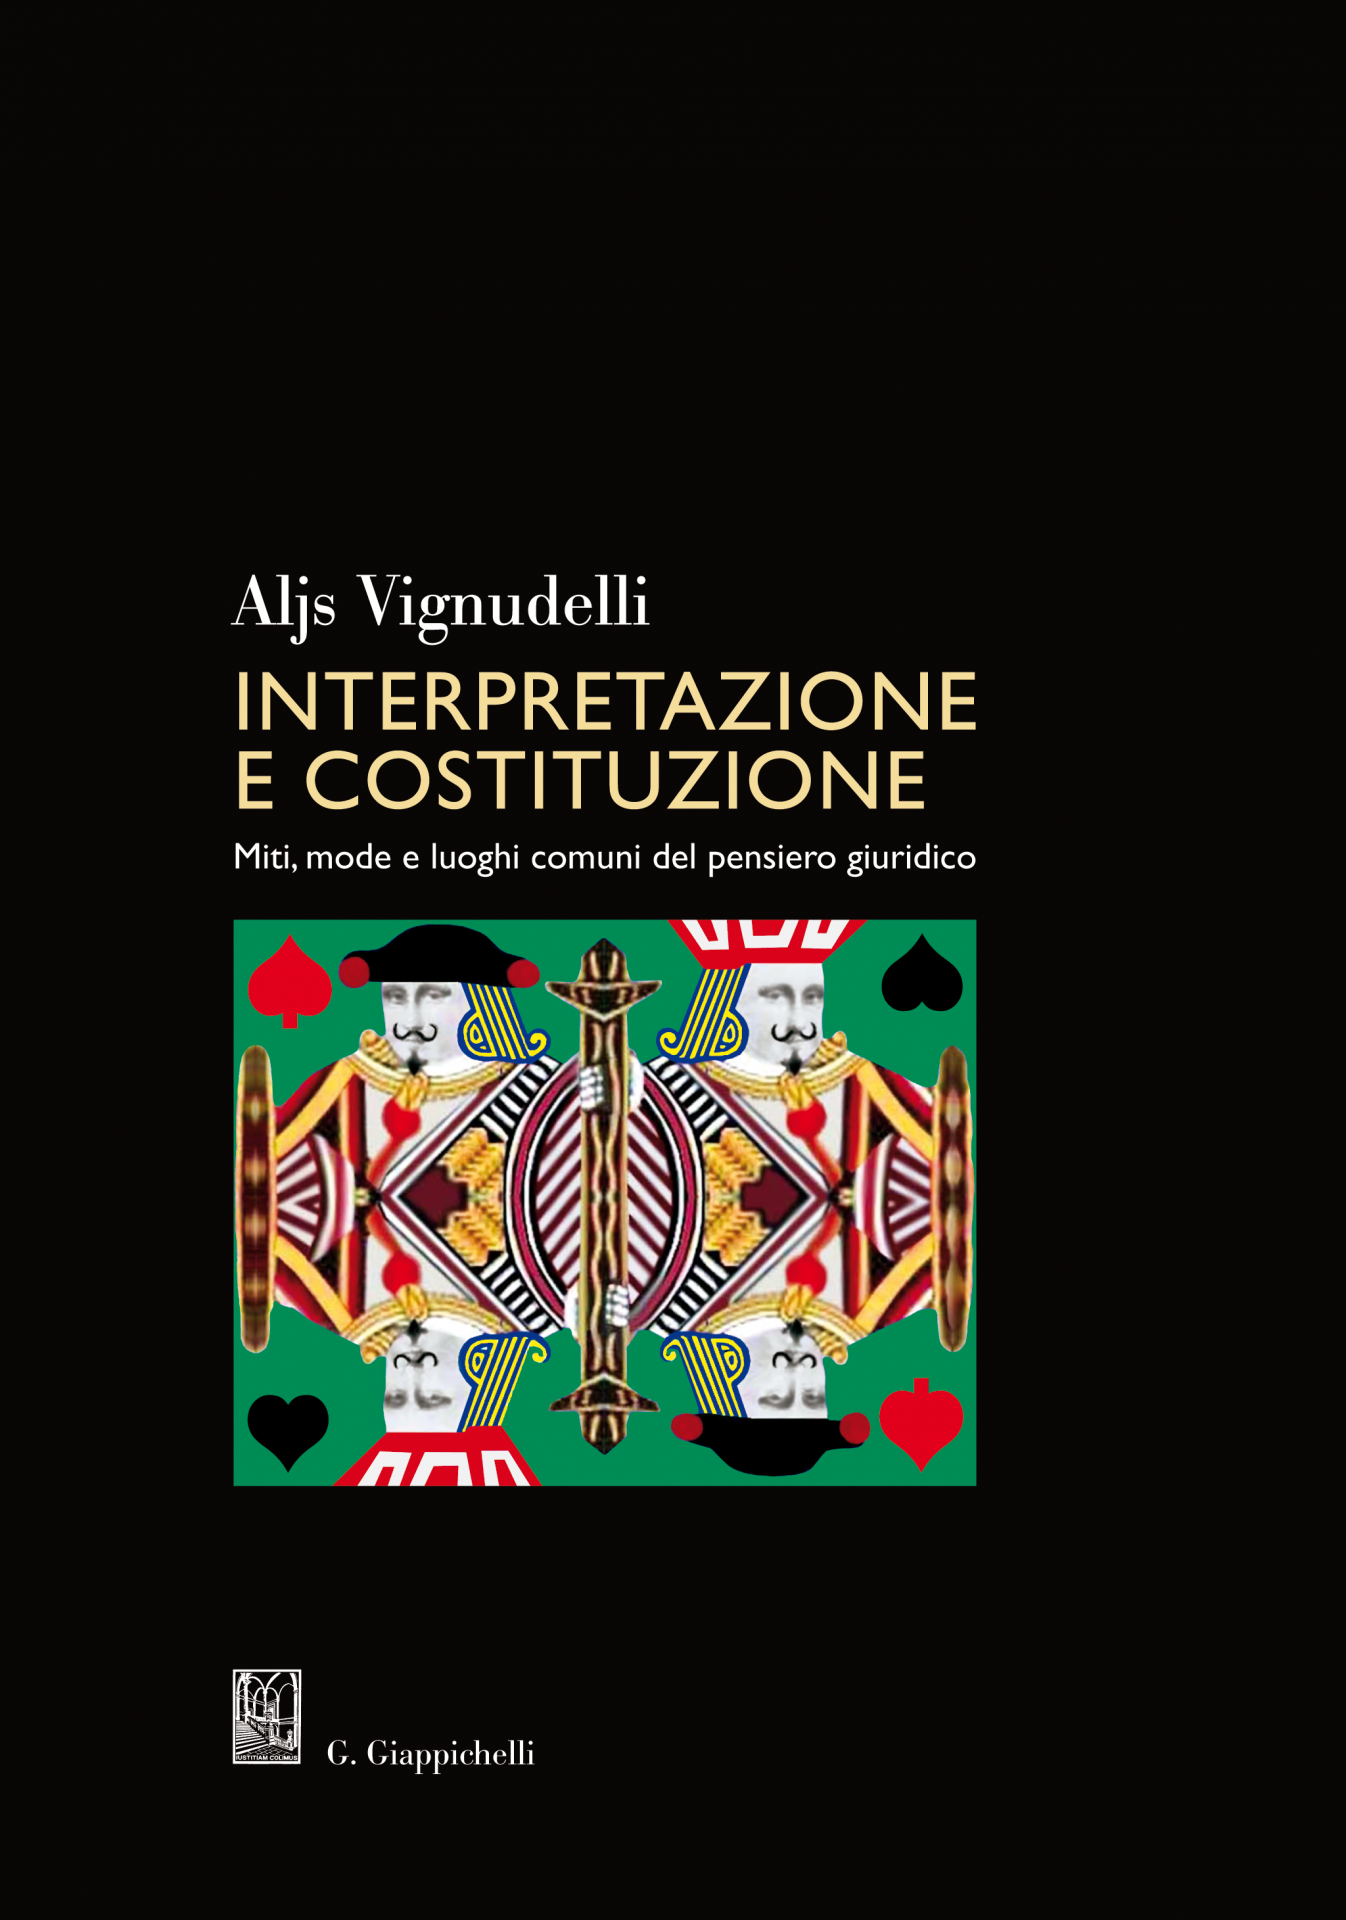 Aljs Vignudelli - Interpretazione e Costituzione